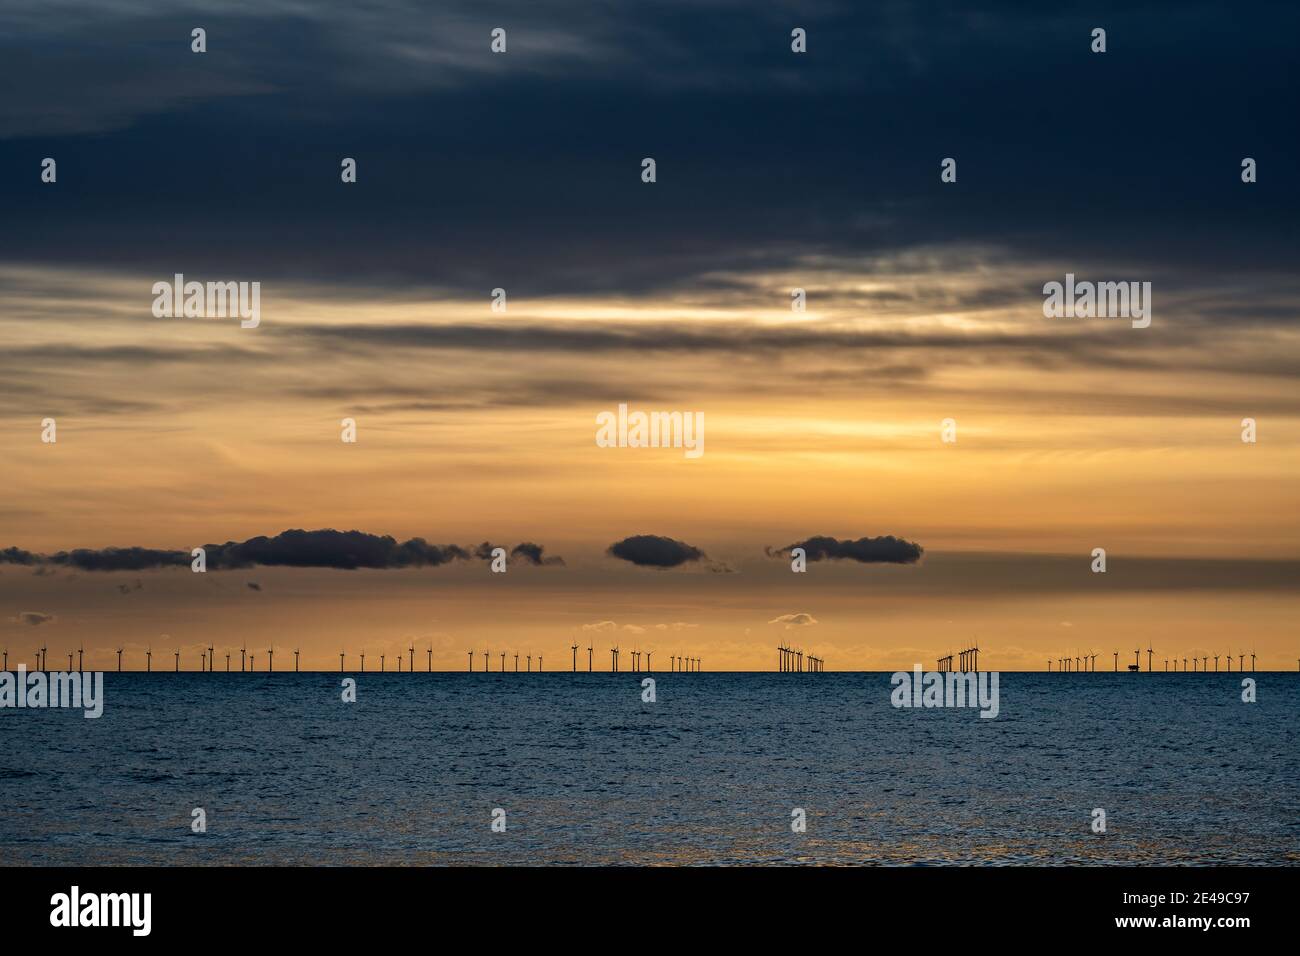 Renewable energy off the coast at dusk Stock Photo